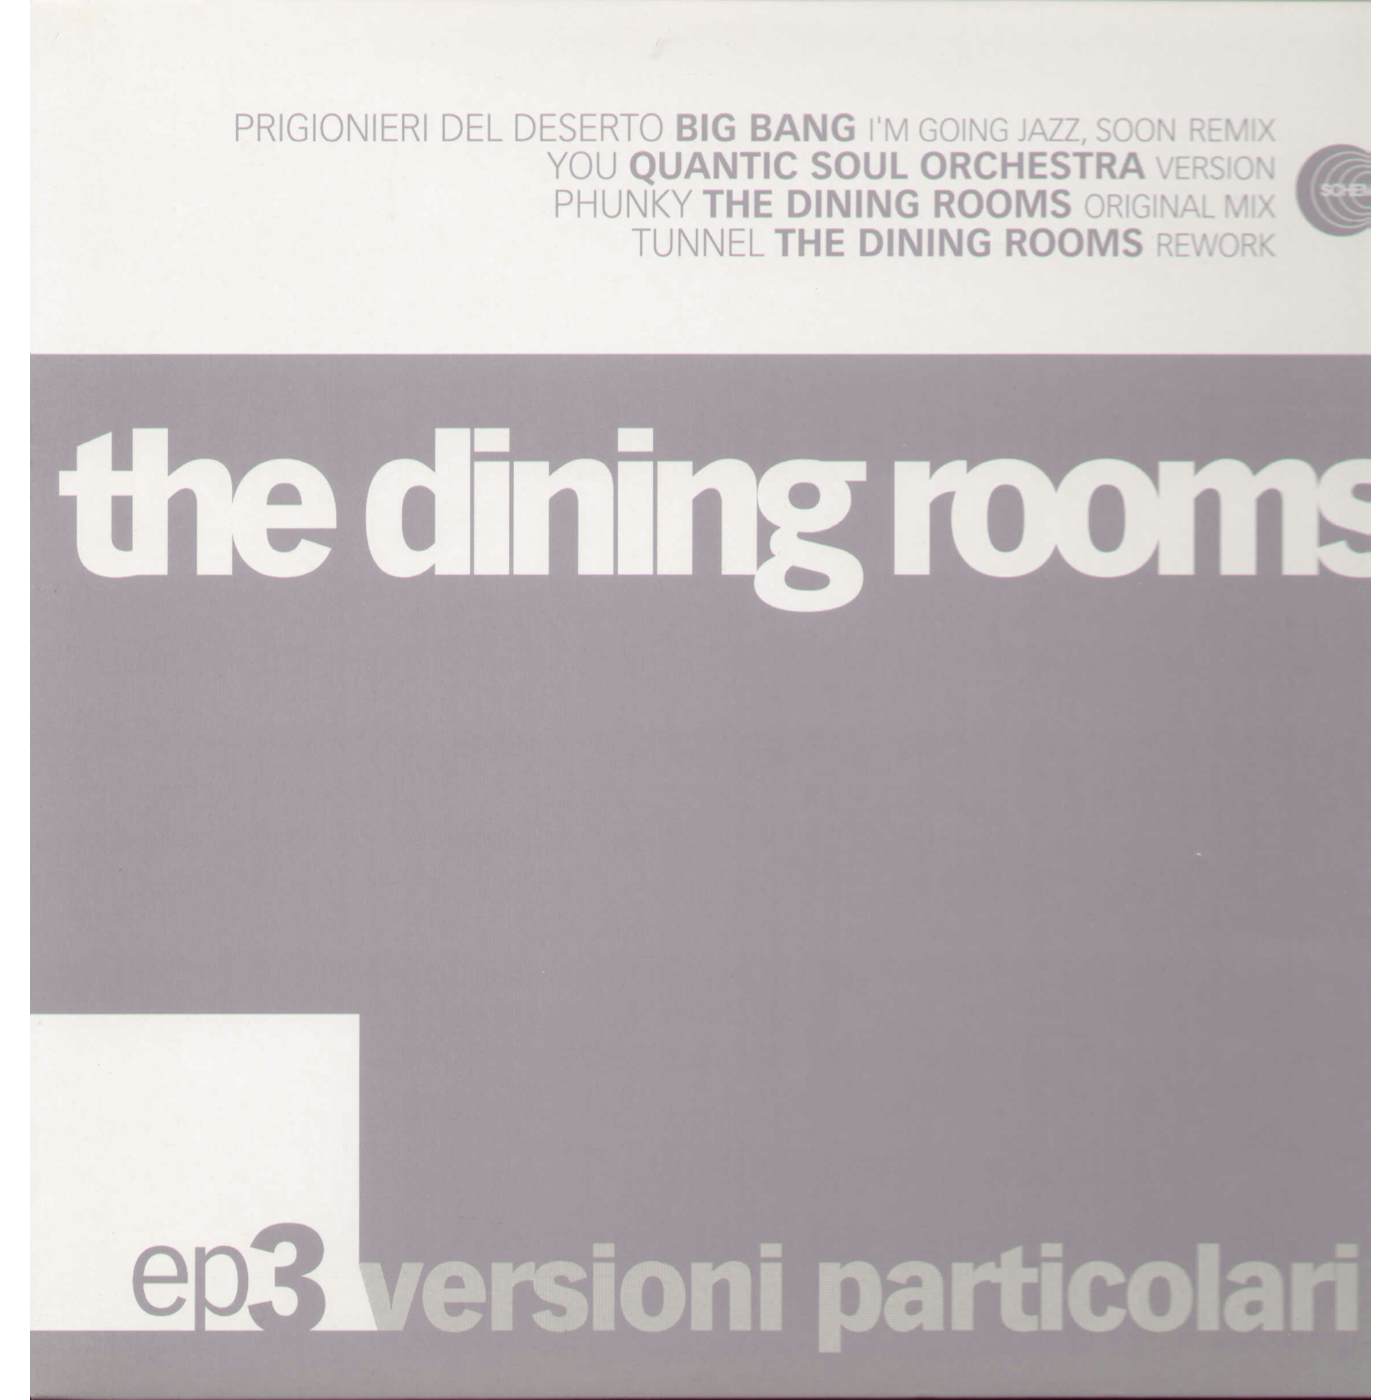 The Dining Rooms VERSIONI PARTICOLARI 3 Vinyl Record